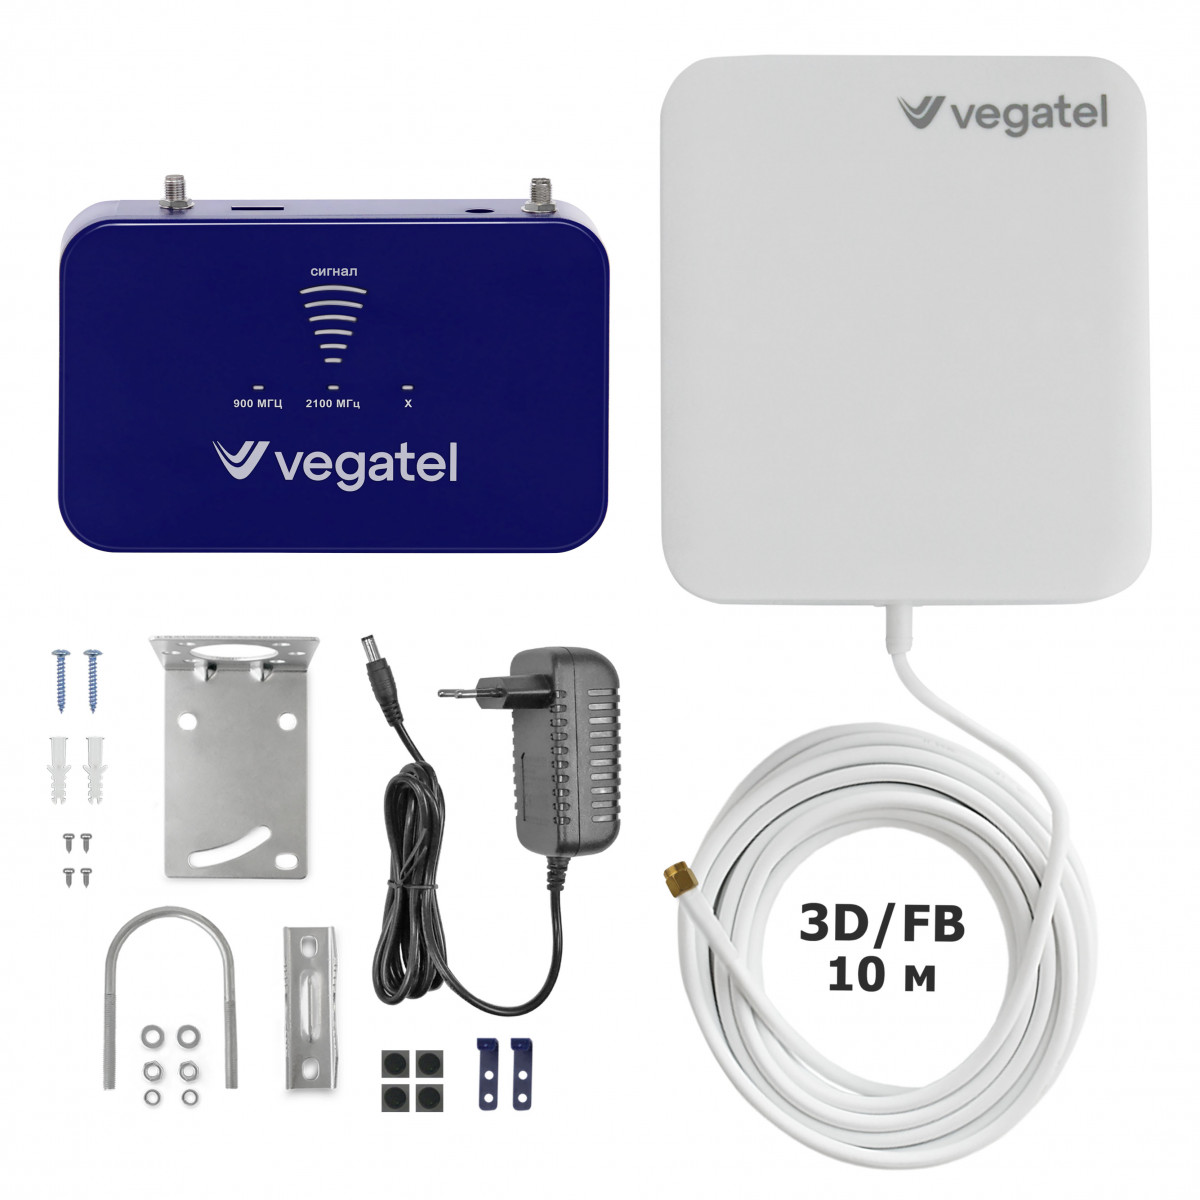 Детальное изображение товара "Комплект усиления сотовой связи Vegatel PL-900/2100" из каталога оборудования Антенна76